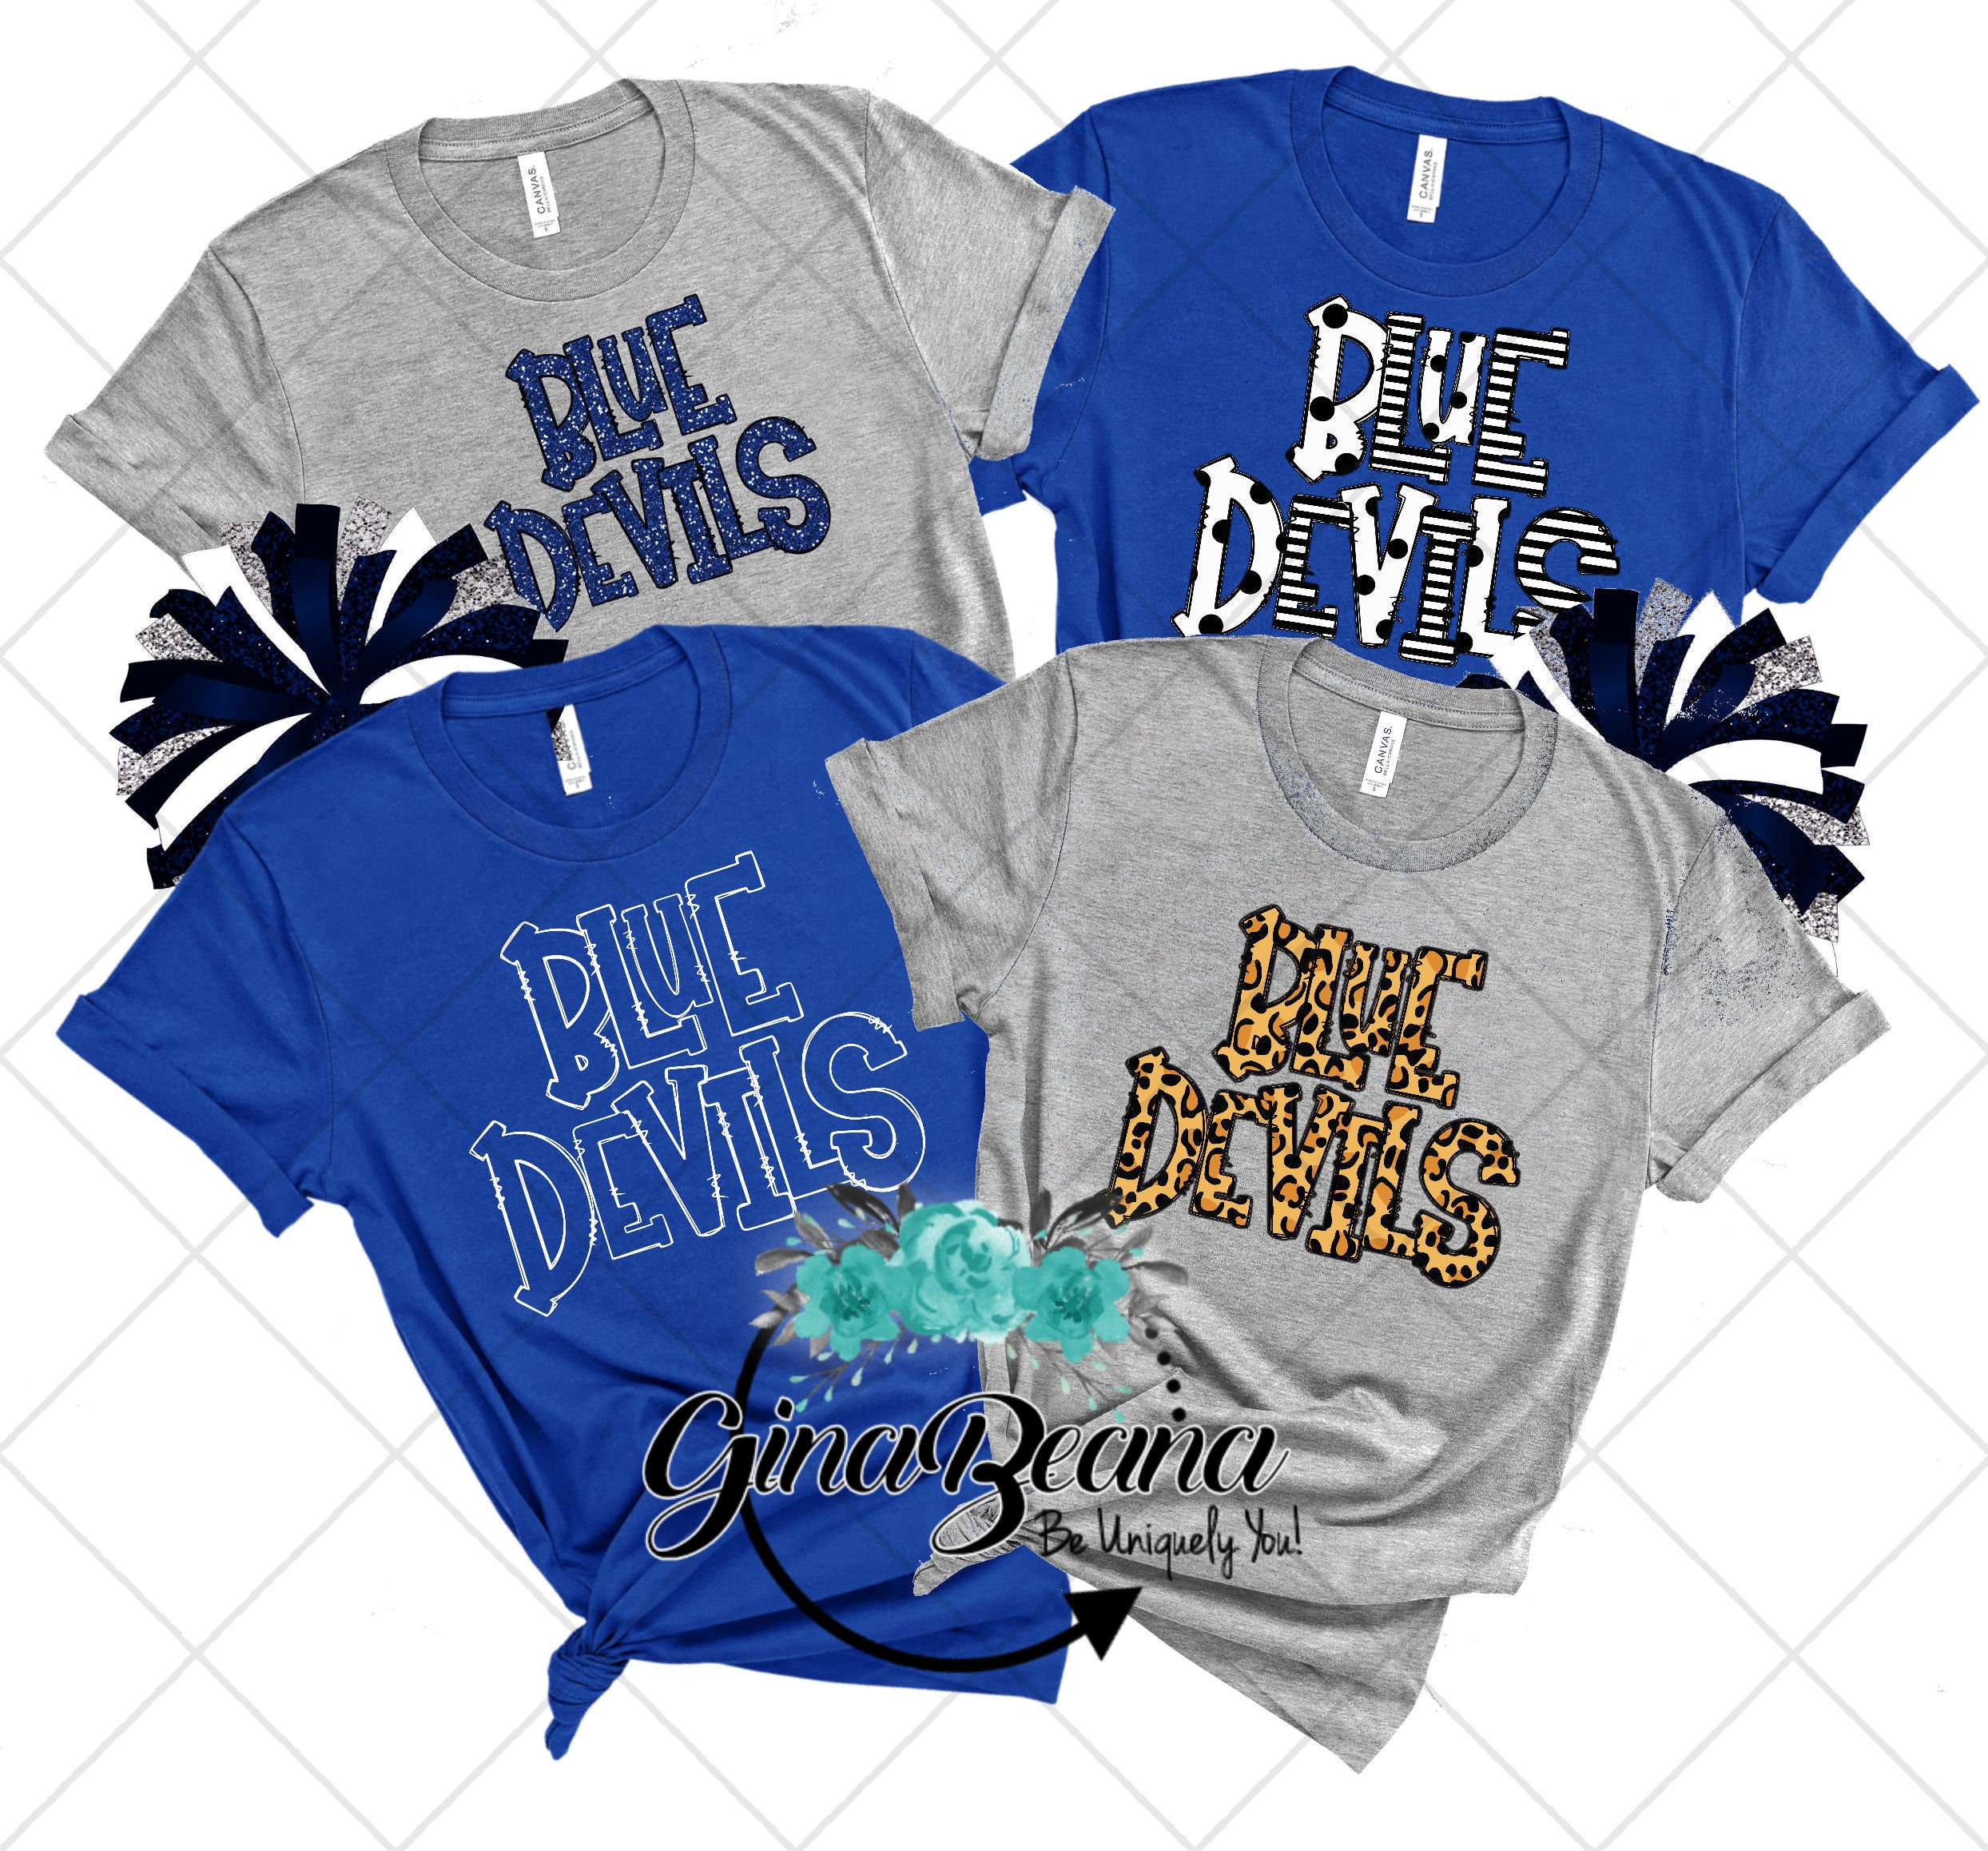 Custom Duke Blue Devils Jersey, Custom Duke Blue Devils Jerseys